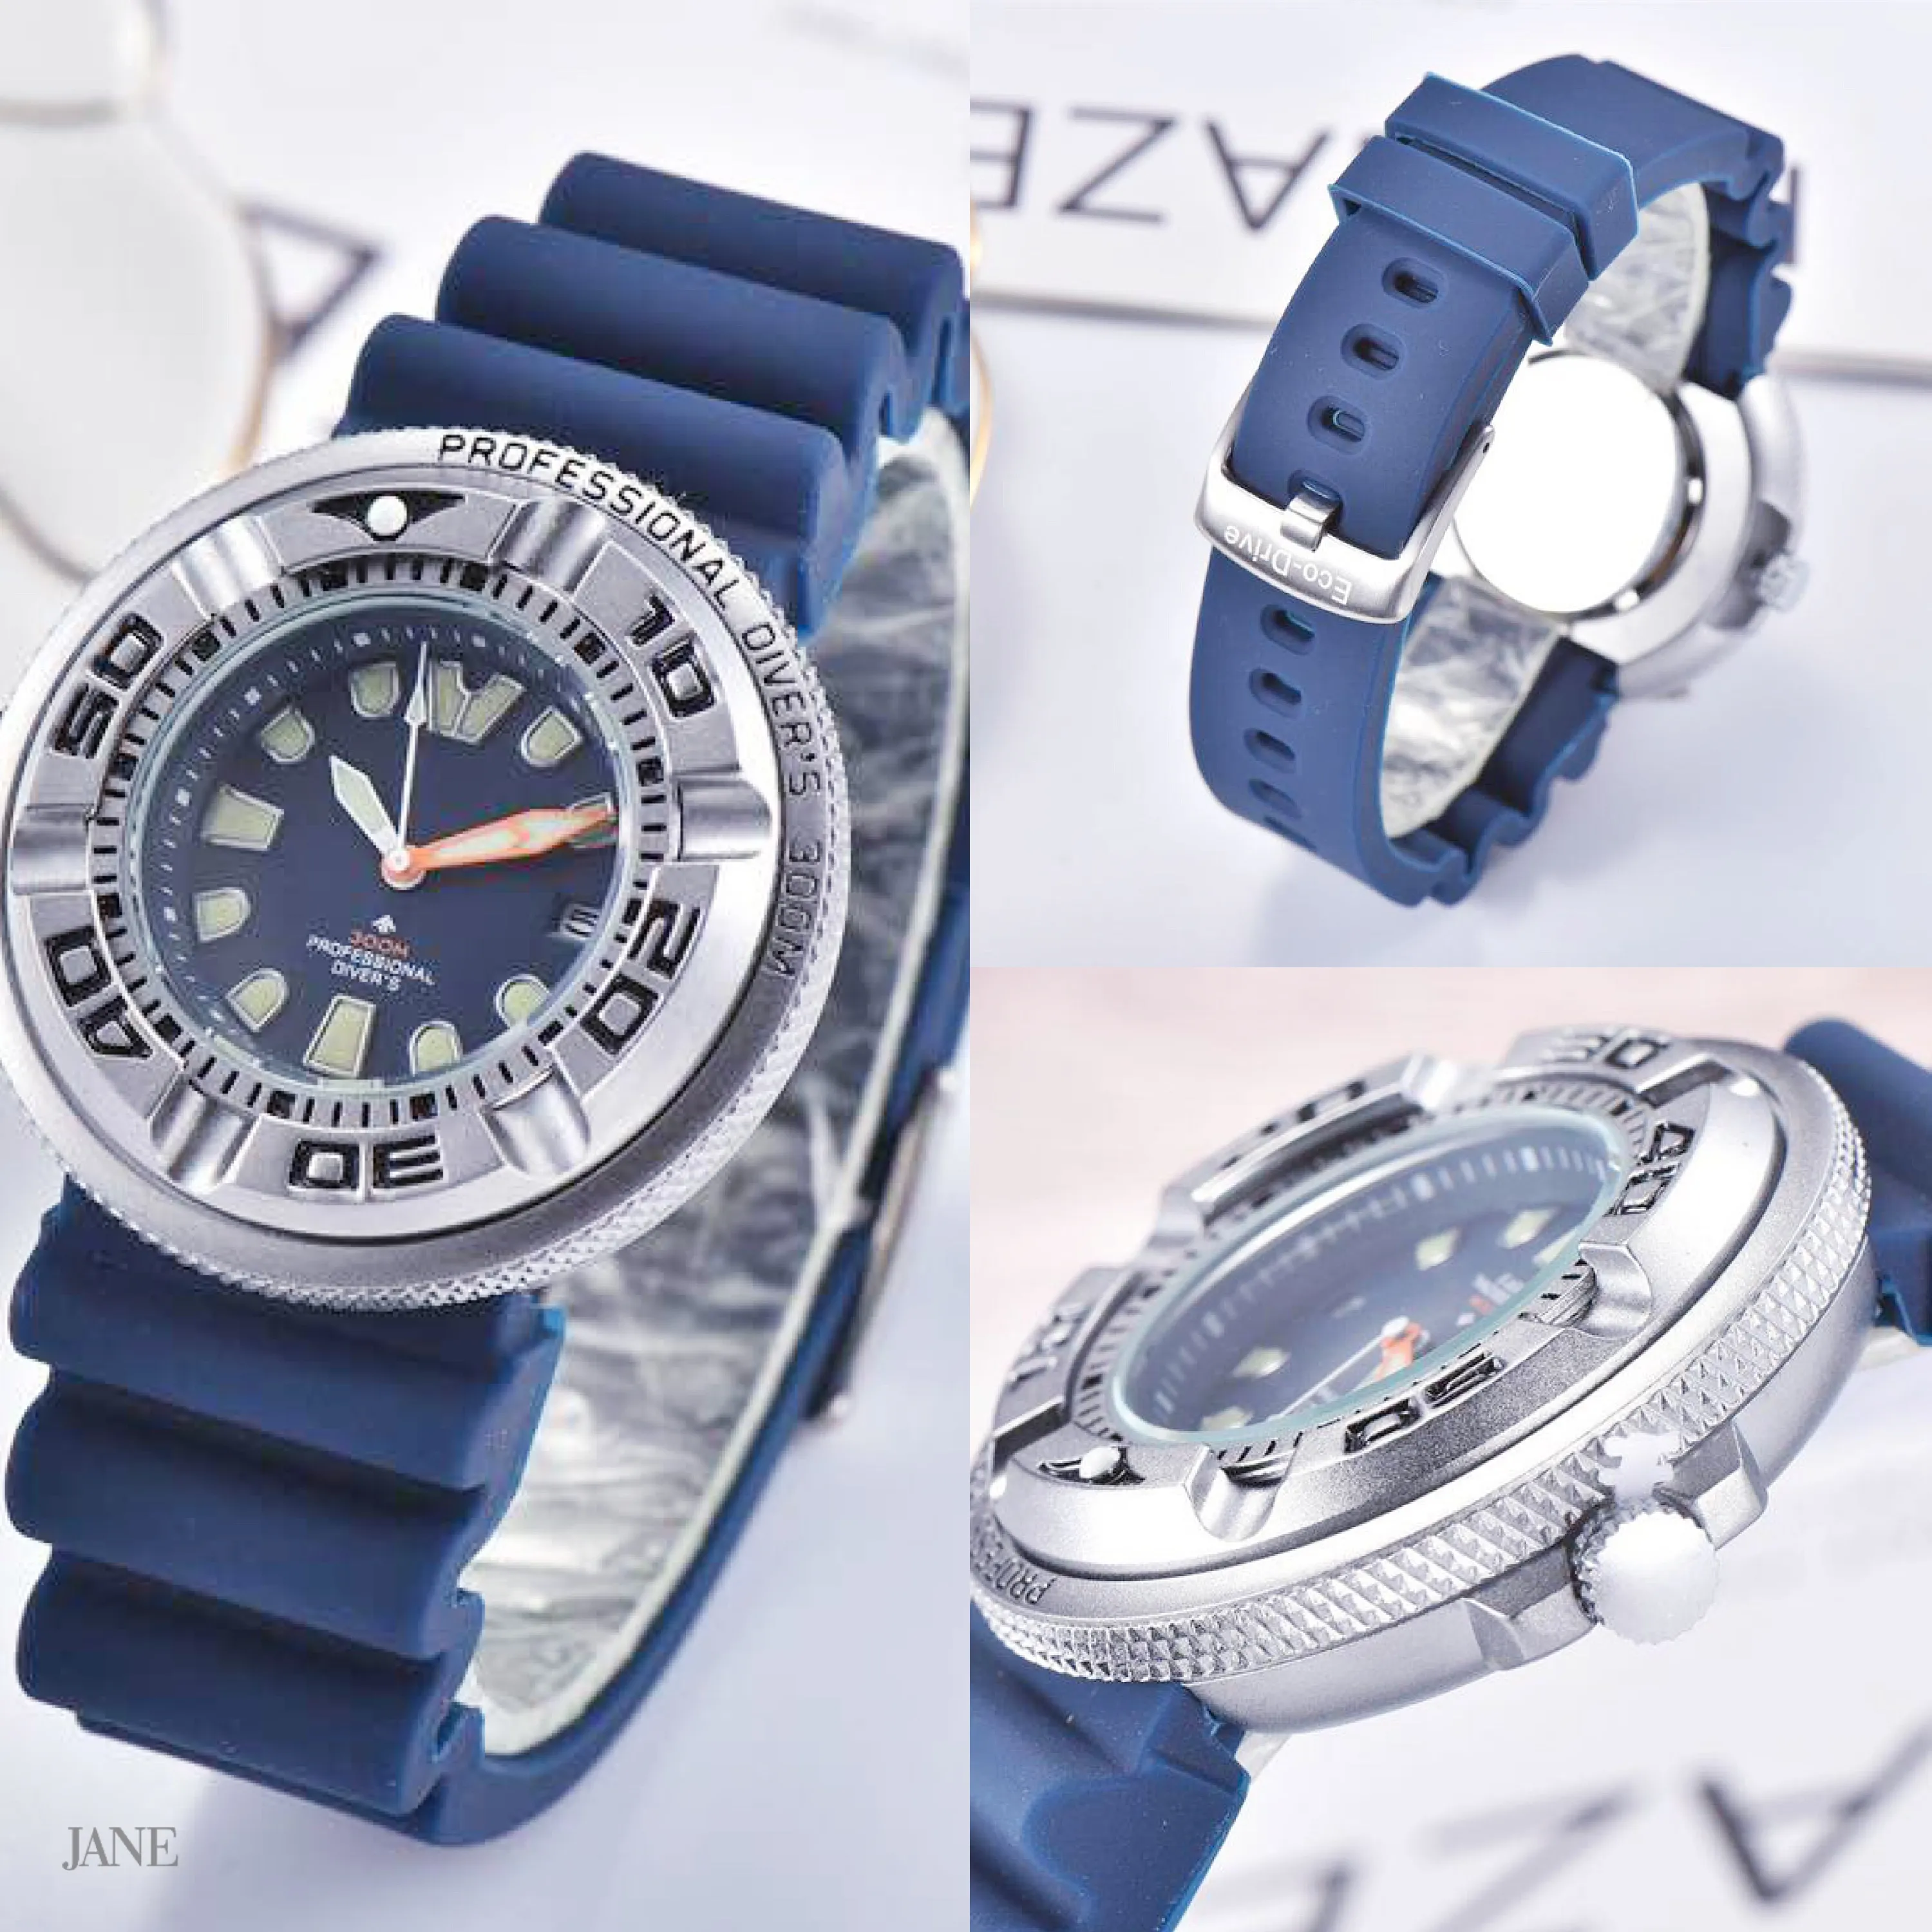 Top lichtgevende horloge mannen quartz horloge saffierglas zwart blauw rubberen band sport mannelijke polshorloge nieuwe mode horloge